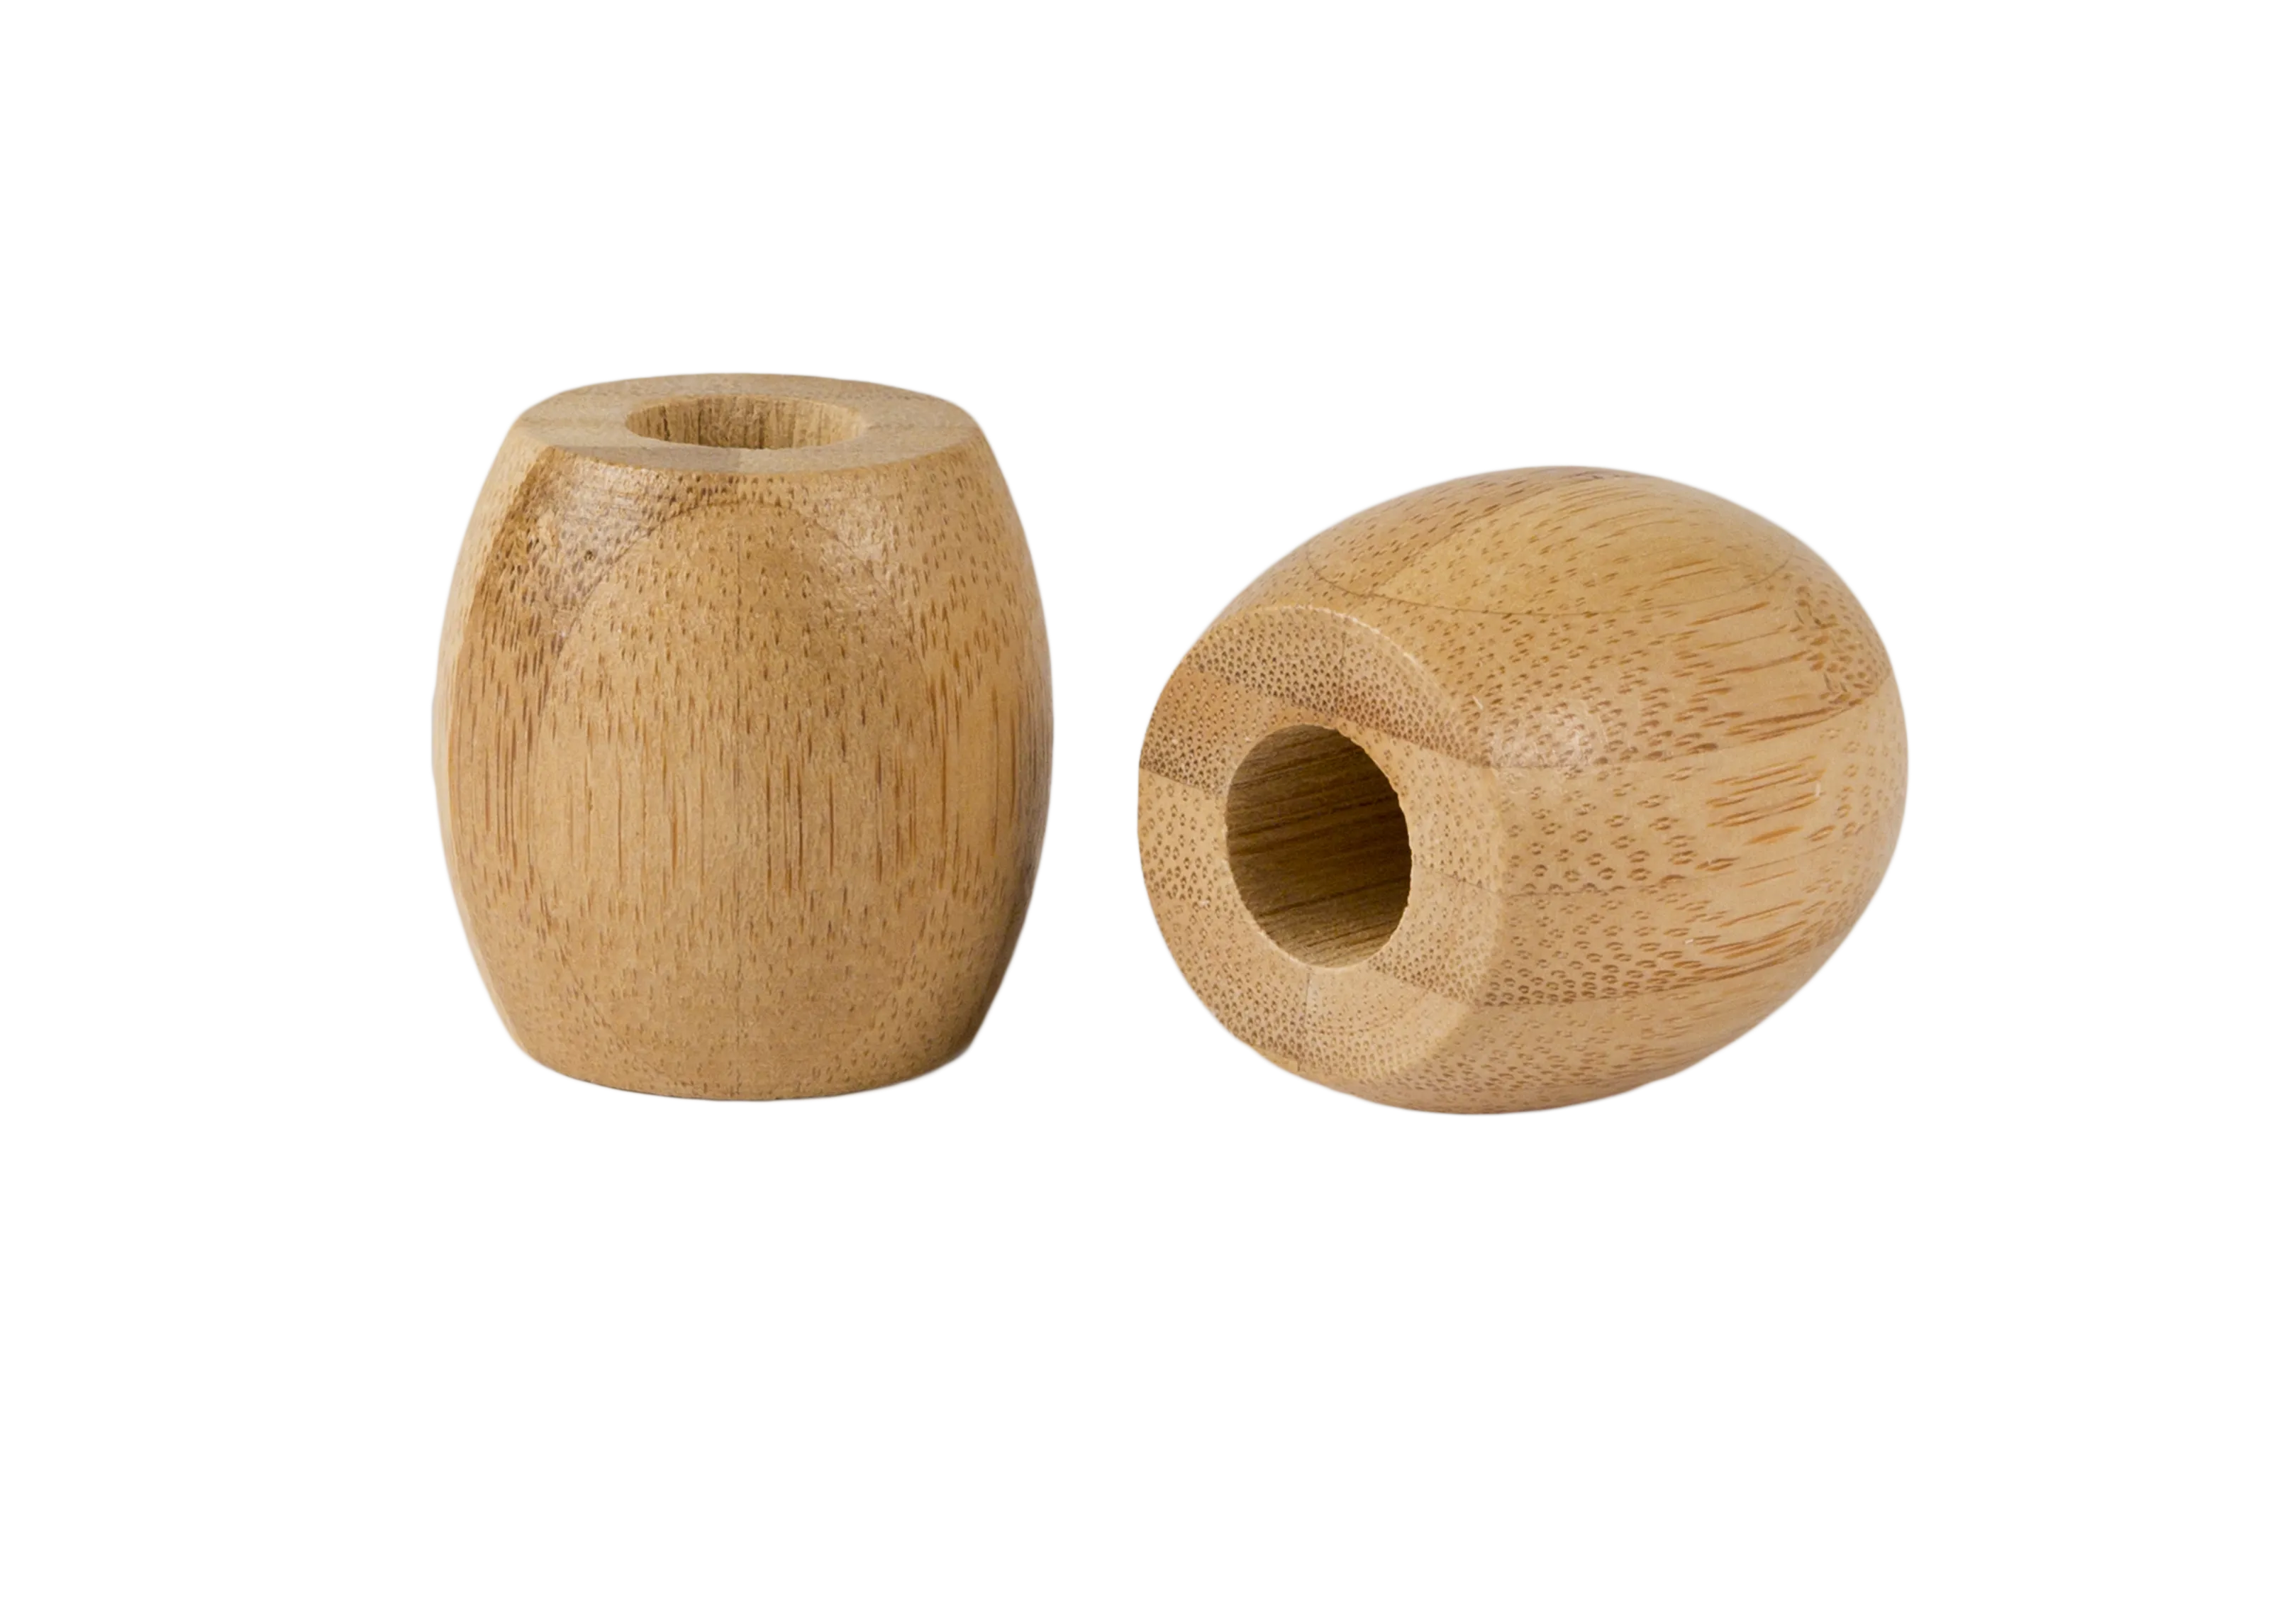 Curanatura Bambusový stojan malý na 1 kartáček